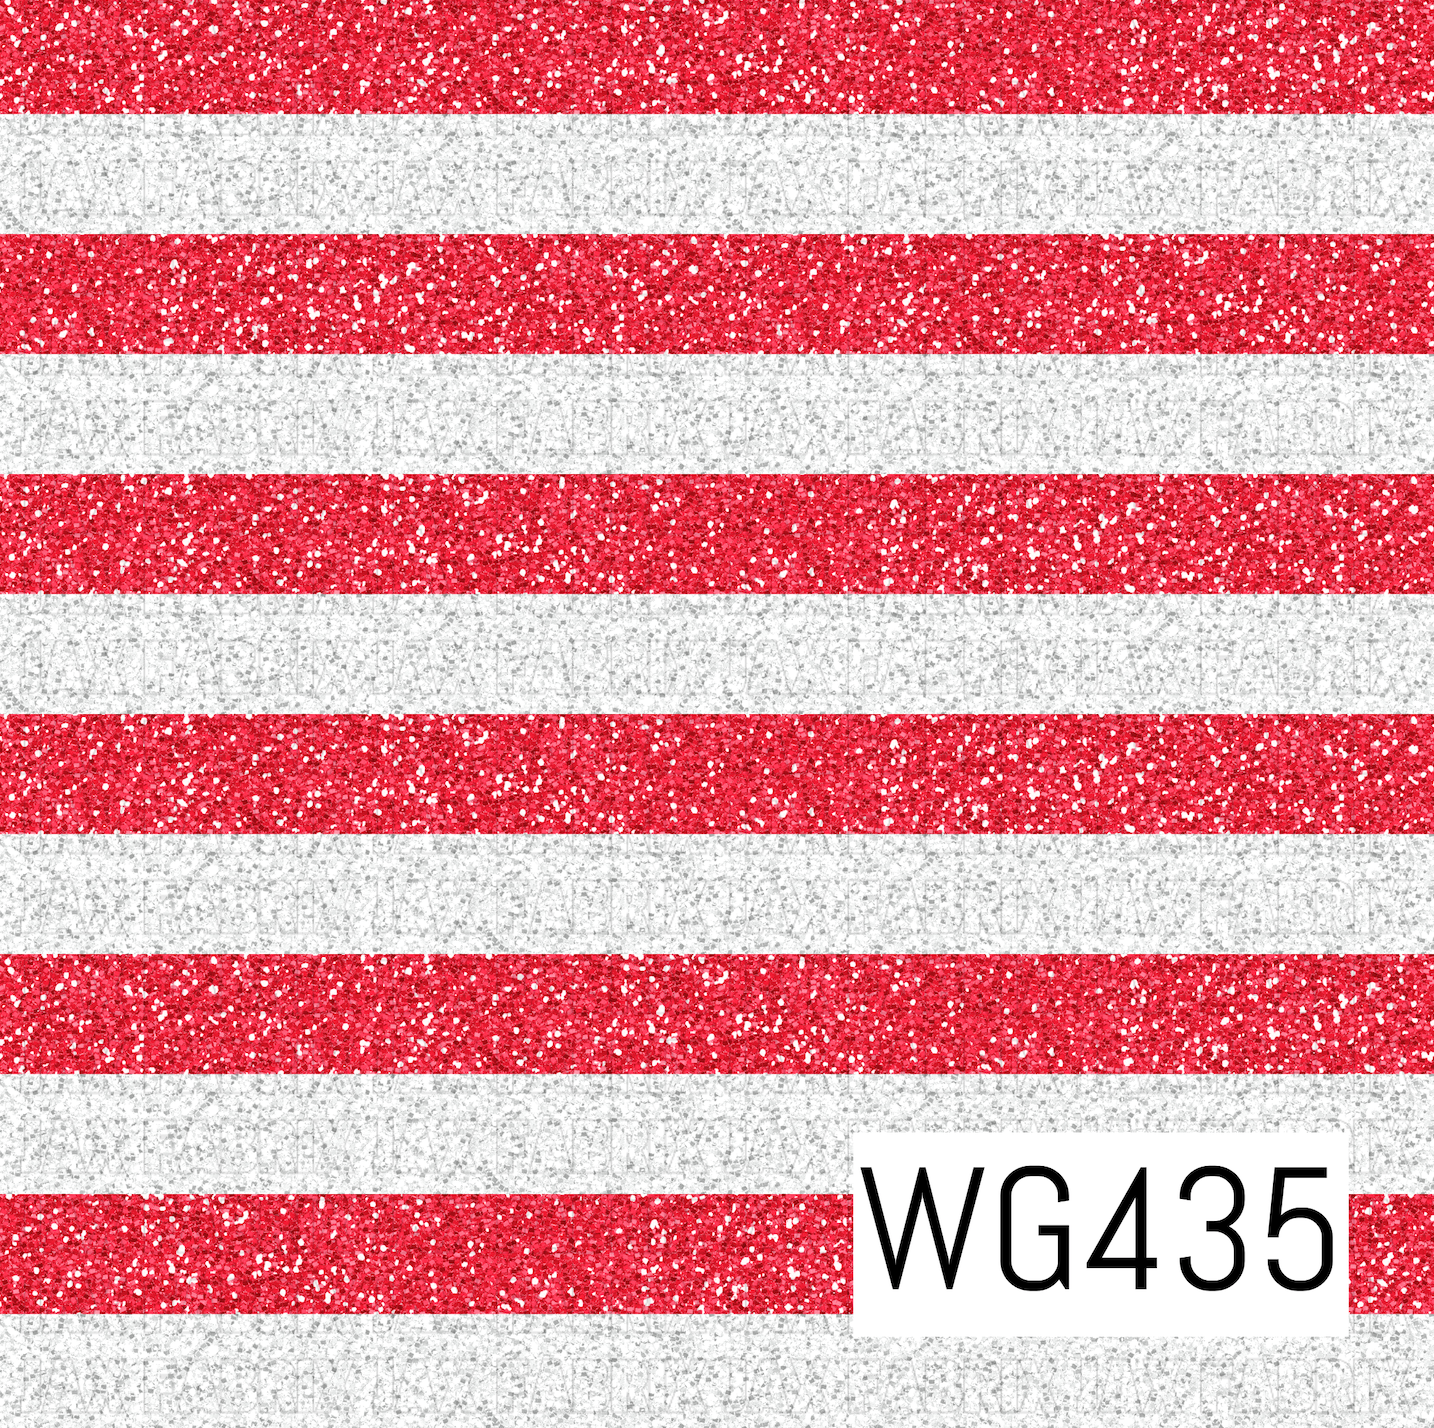 WG435